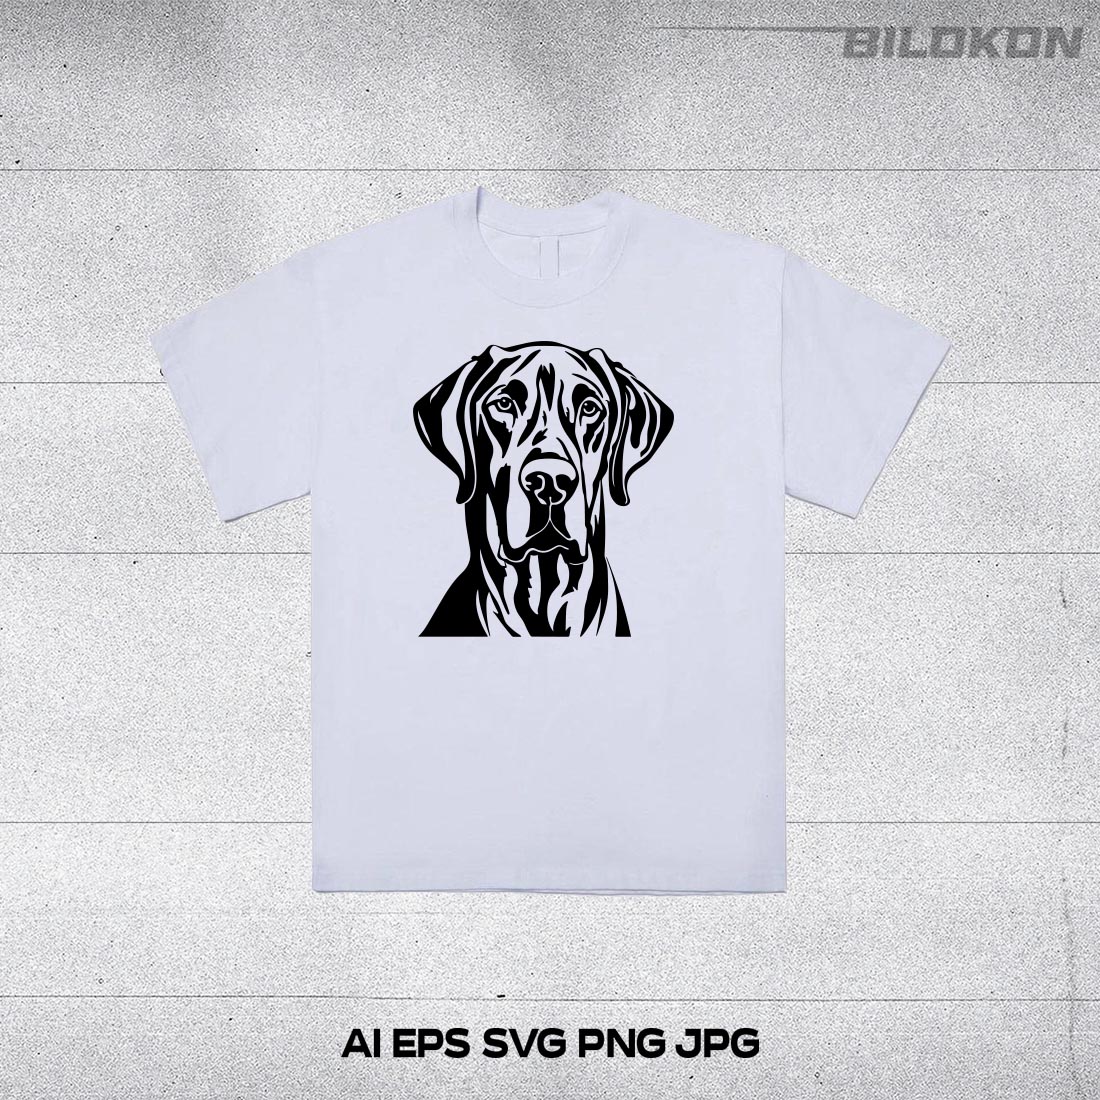 Great Dane dog head, SVG, Vector, Illustration, SVG Bundle preview image.